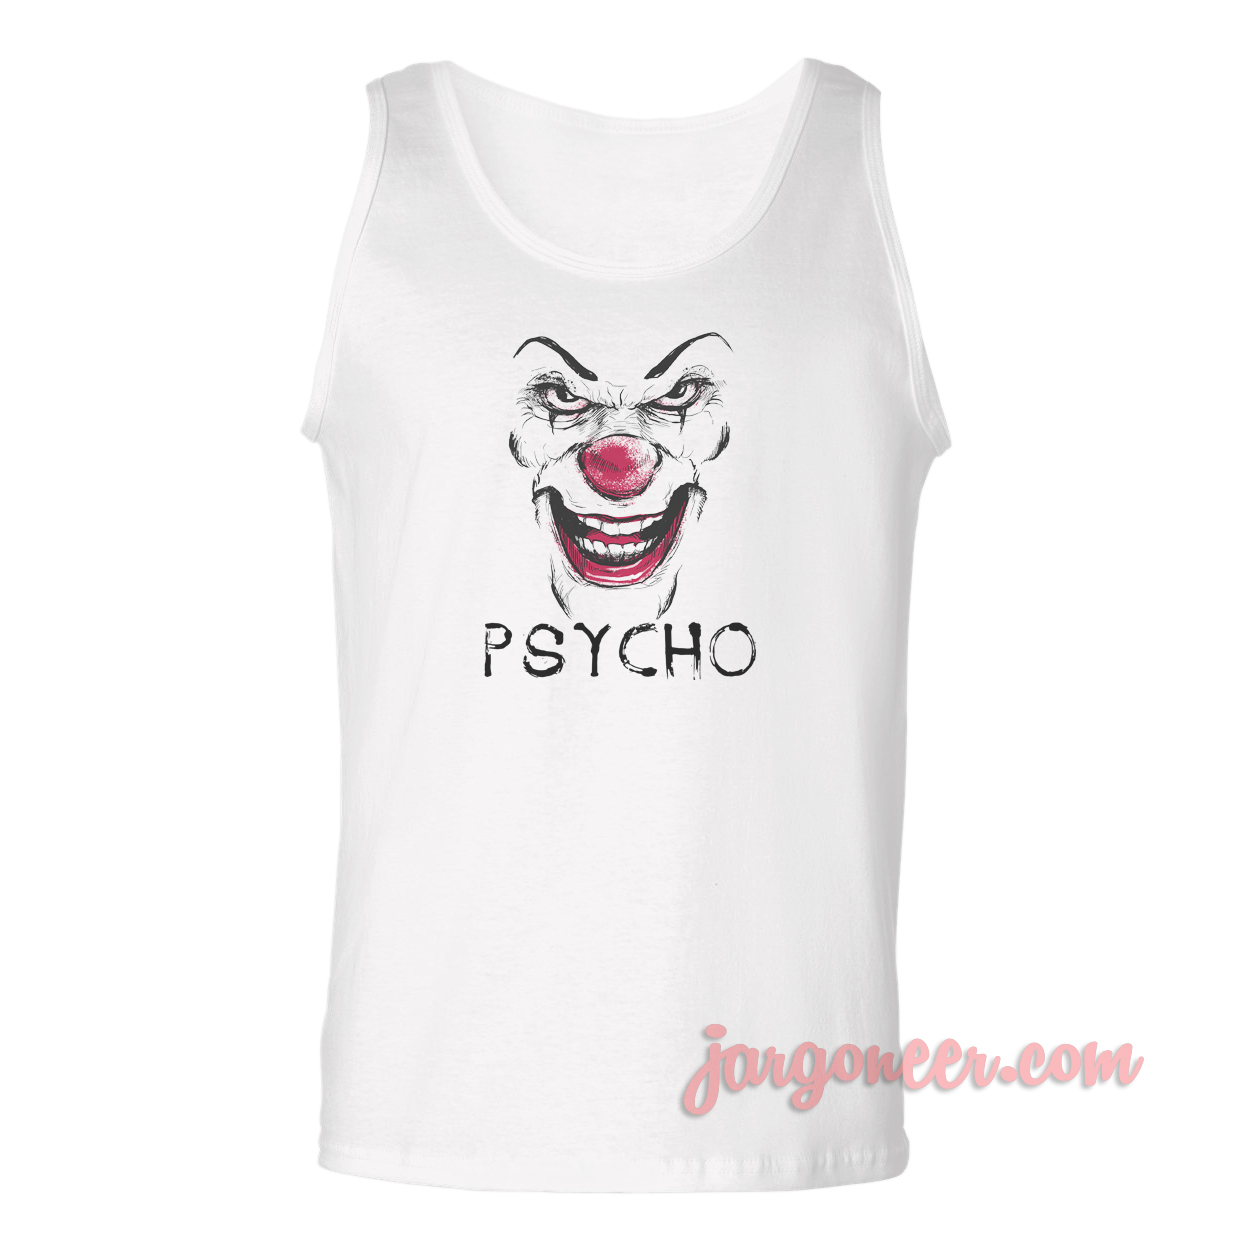 Psycho Clown - Shop Unique Graphic Cool Shirt Designs